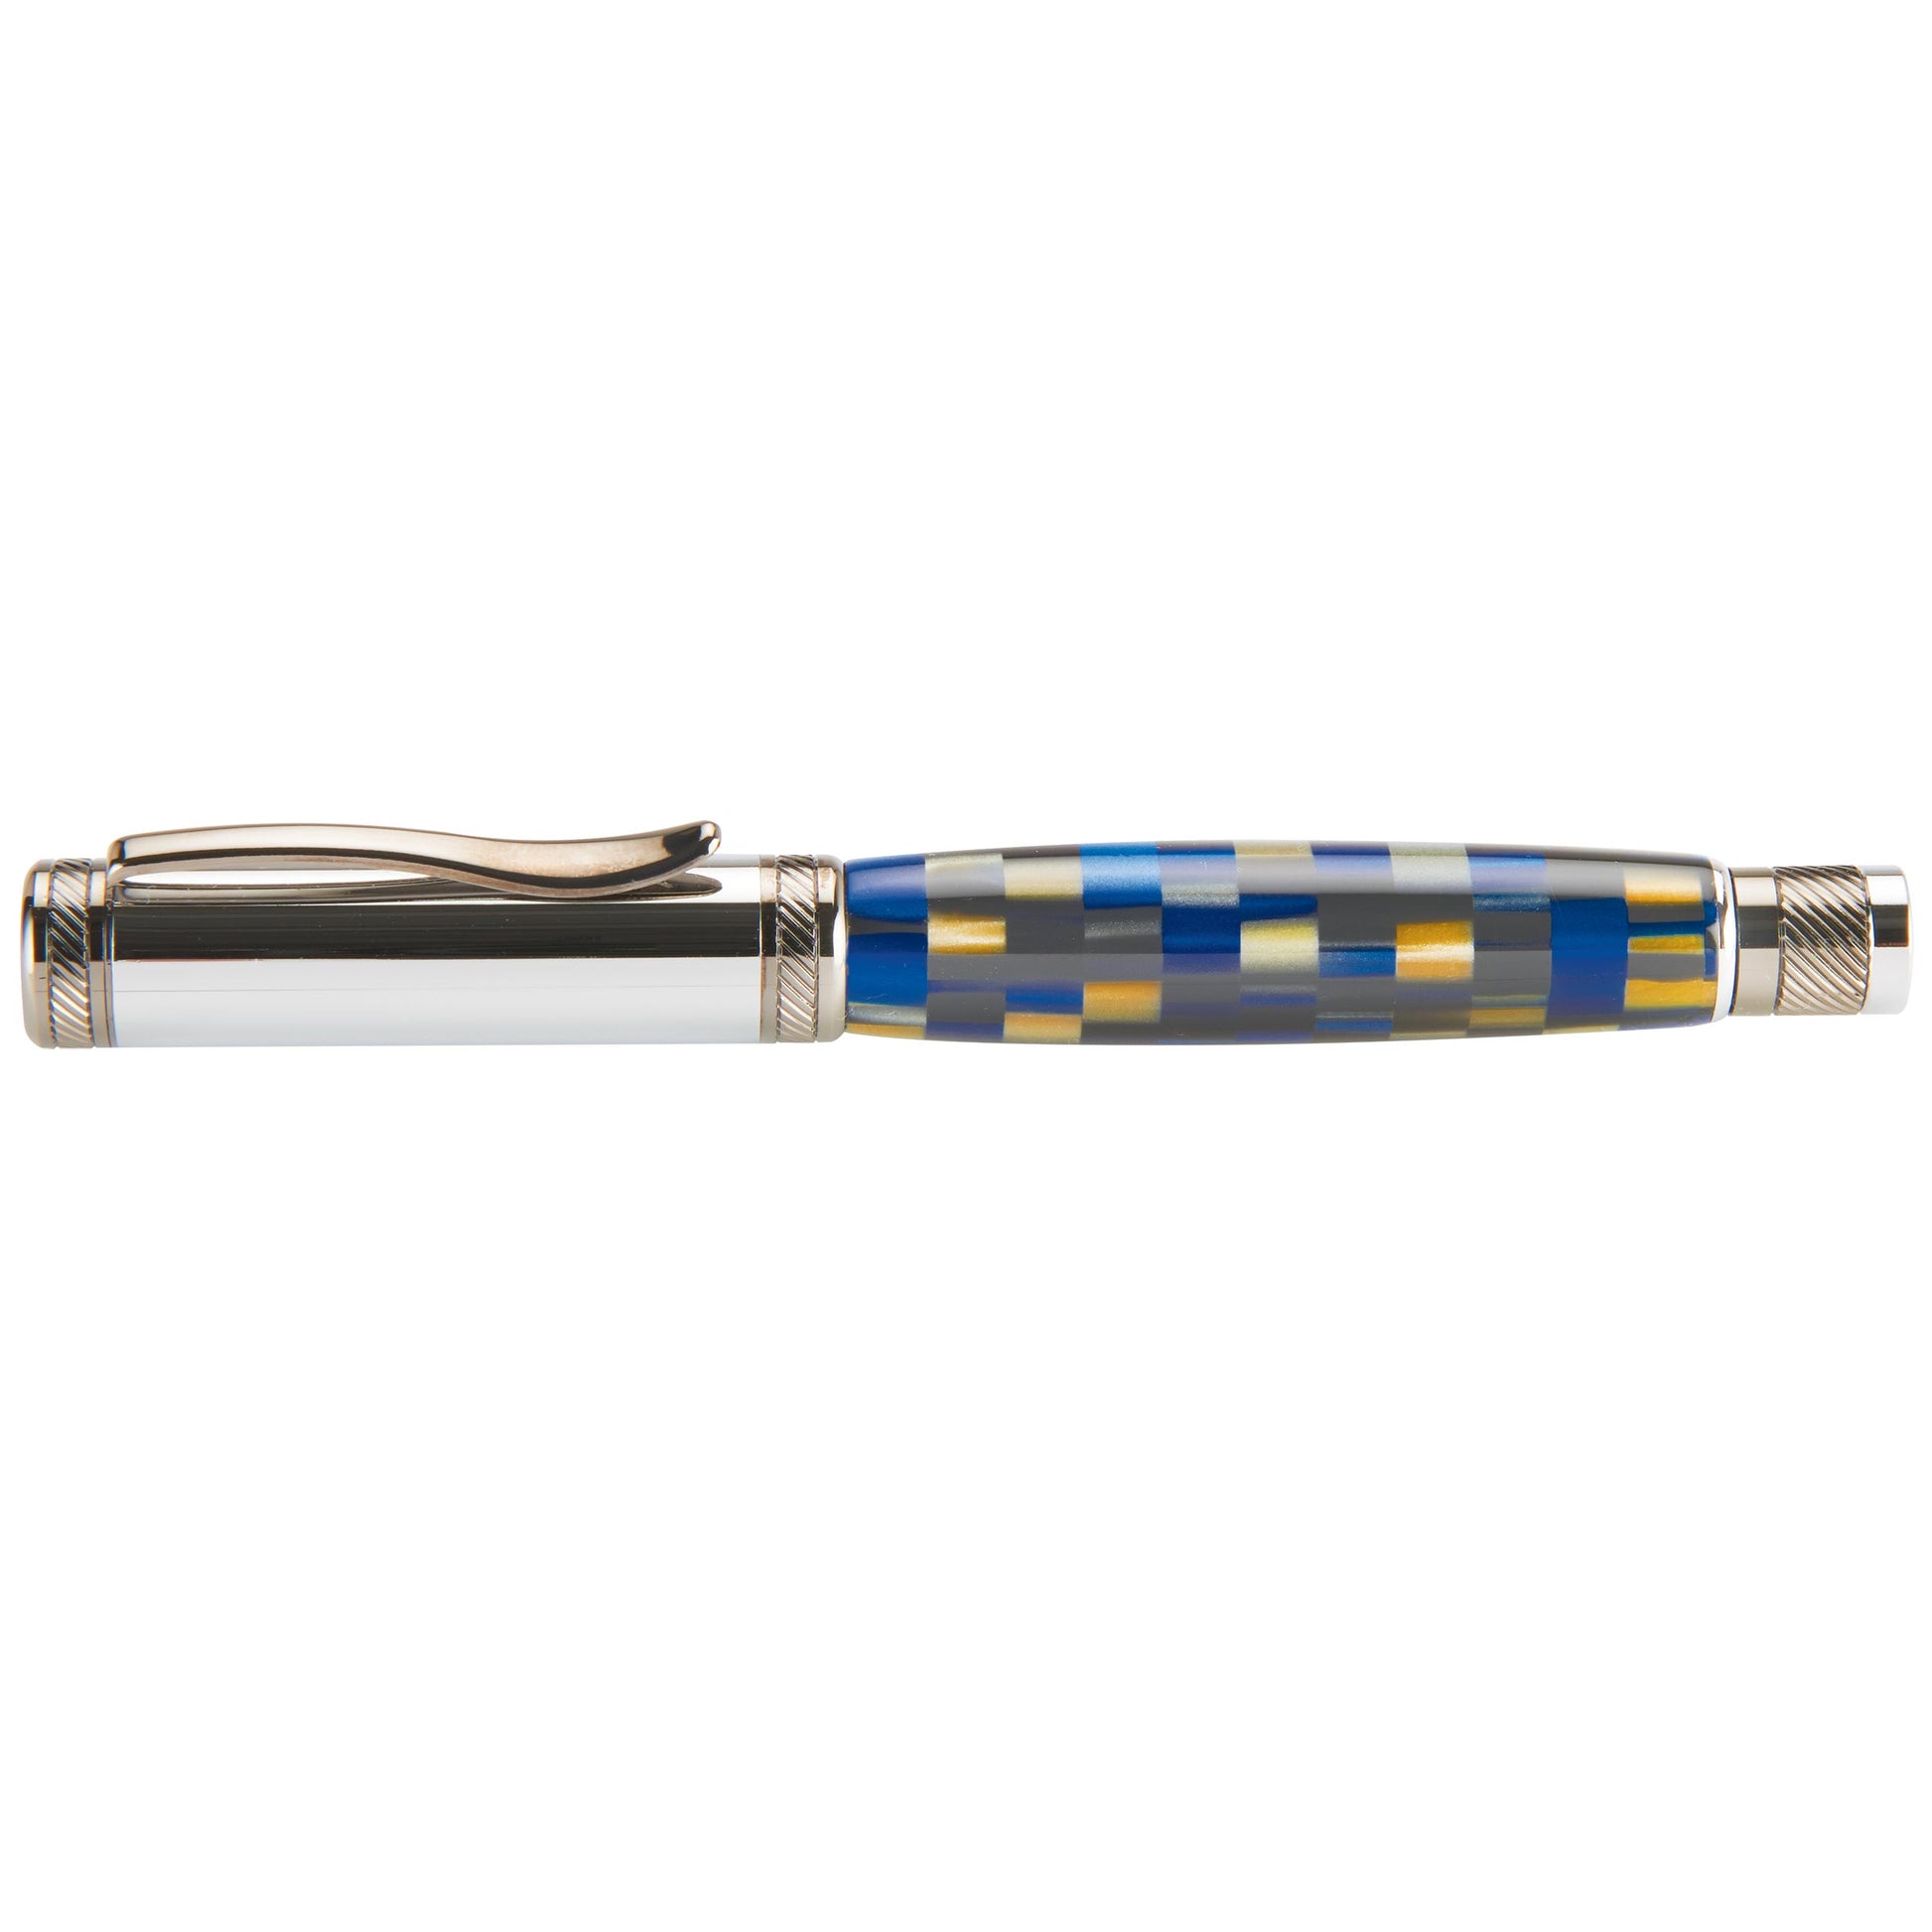 Attraction Magnetic Ballpoint Pen Kit - Chrome & Gunmetal alt 0